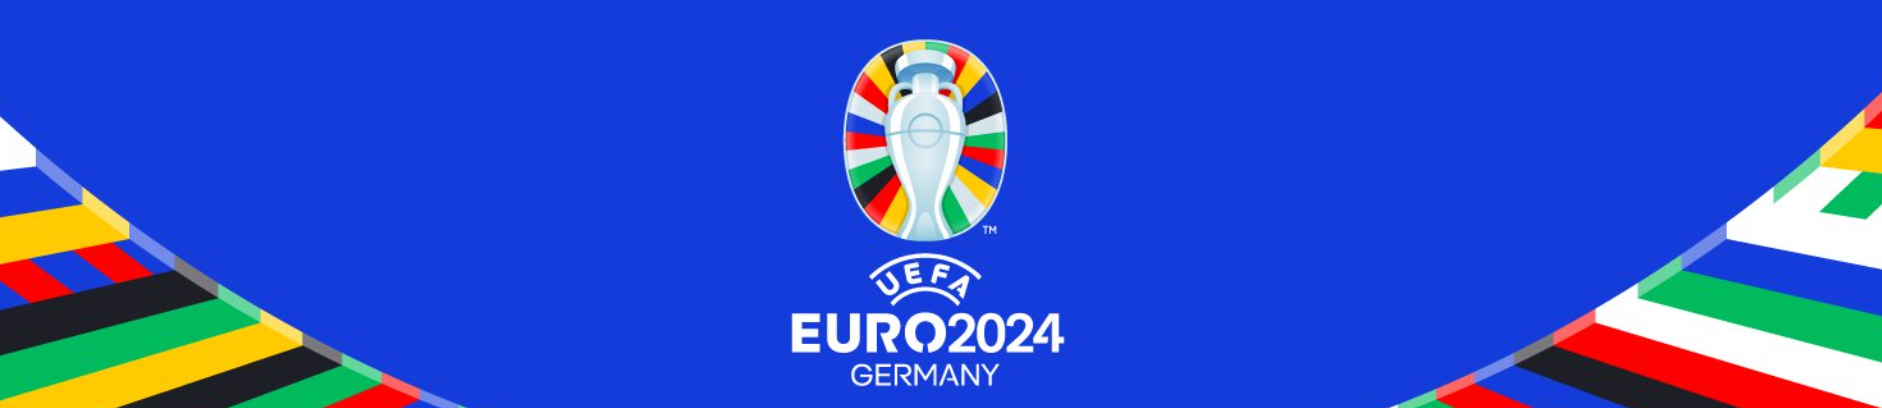 bandeau Euro 2024